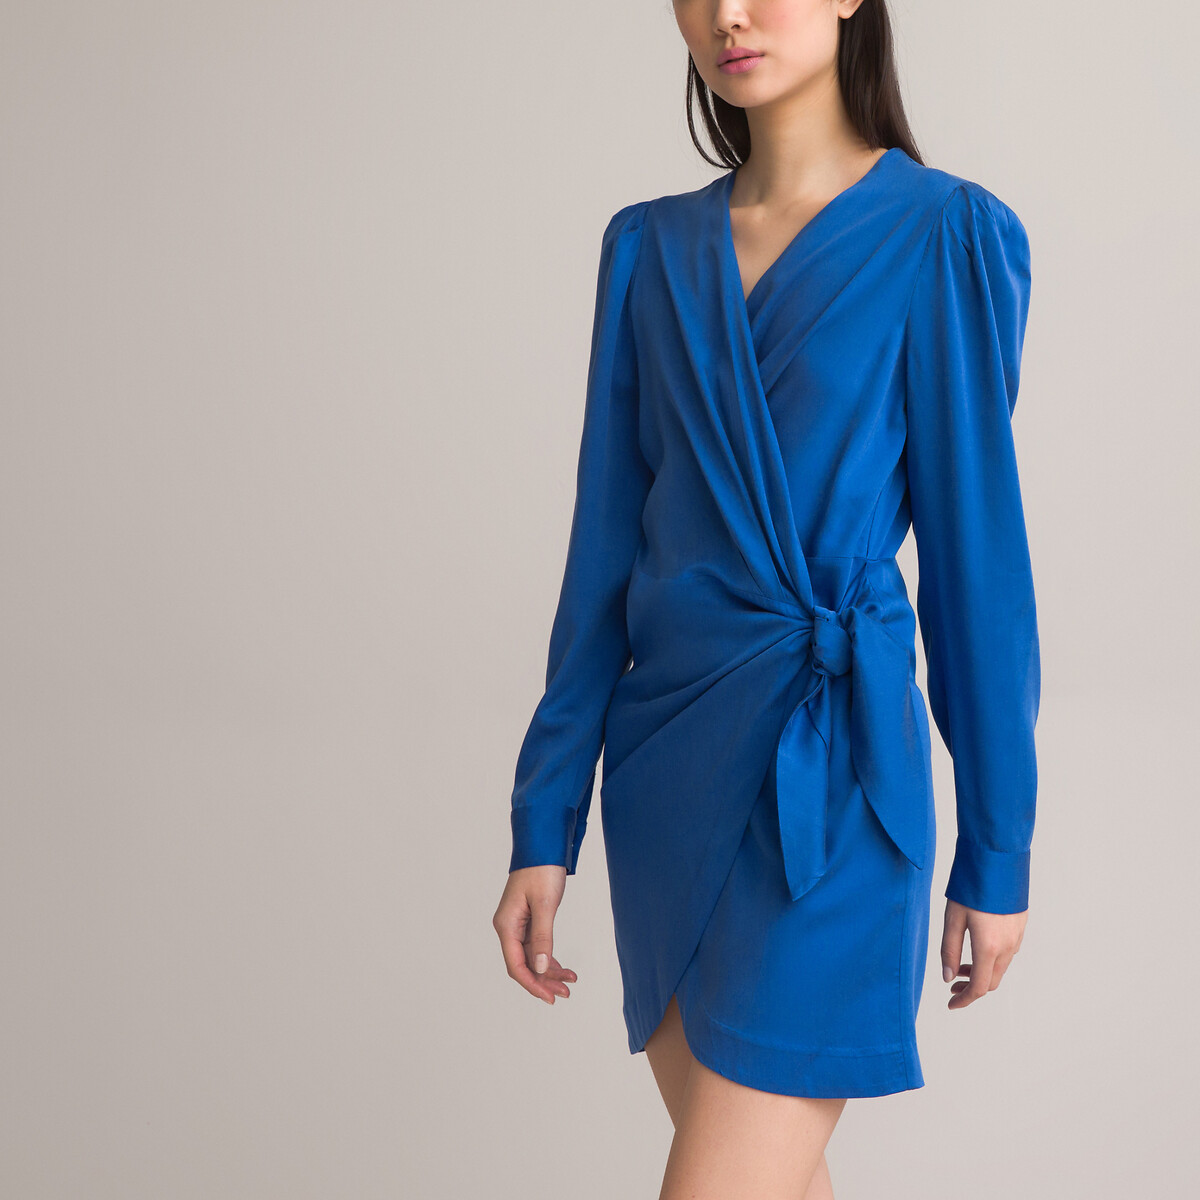 Платье короткое с запахом длинные рукава 44 синий платье с запахом рукава 34 с принтом 44 синий